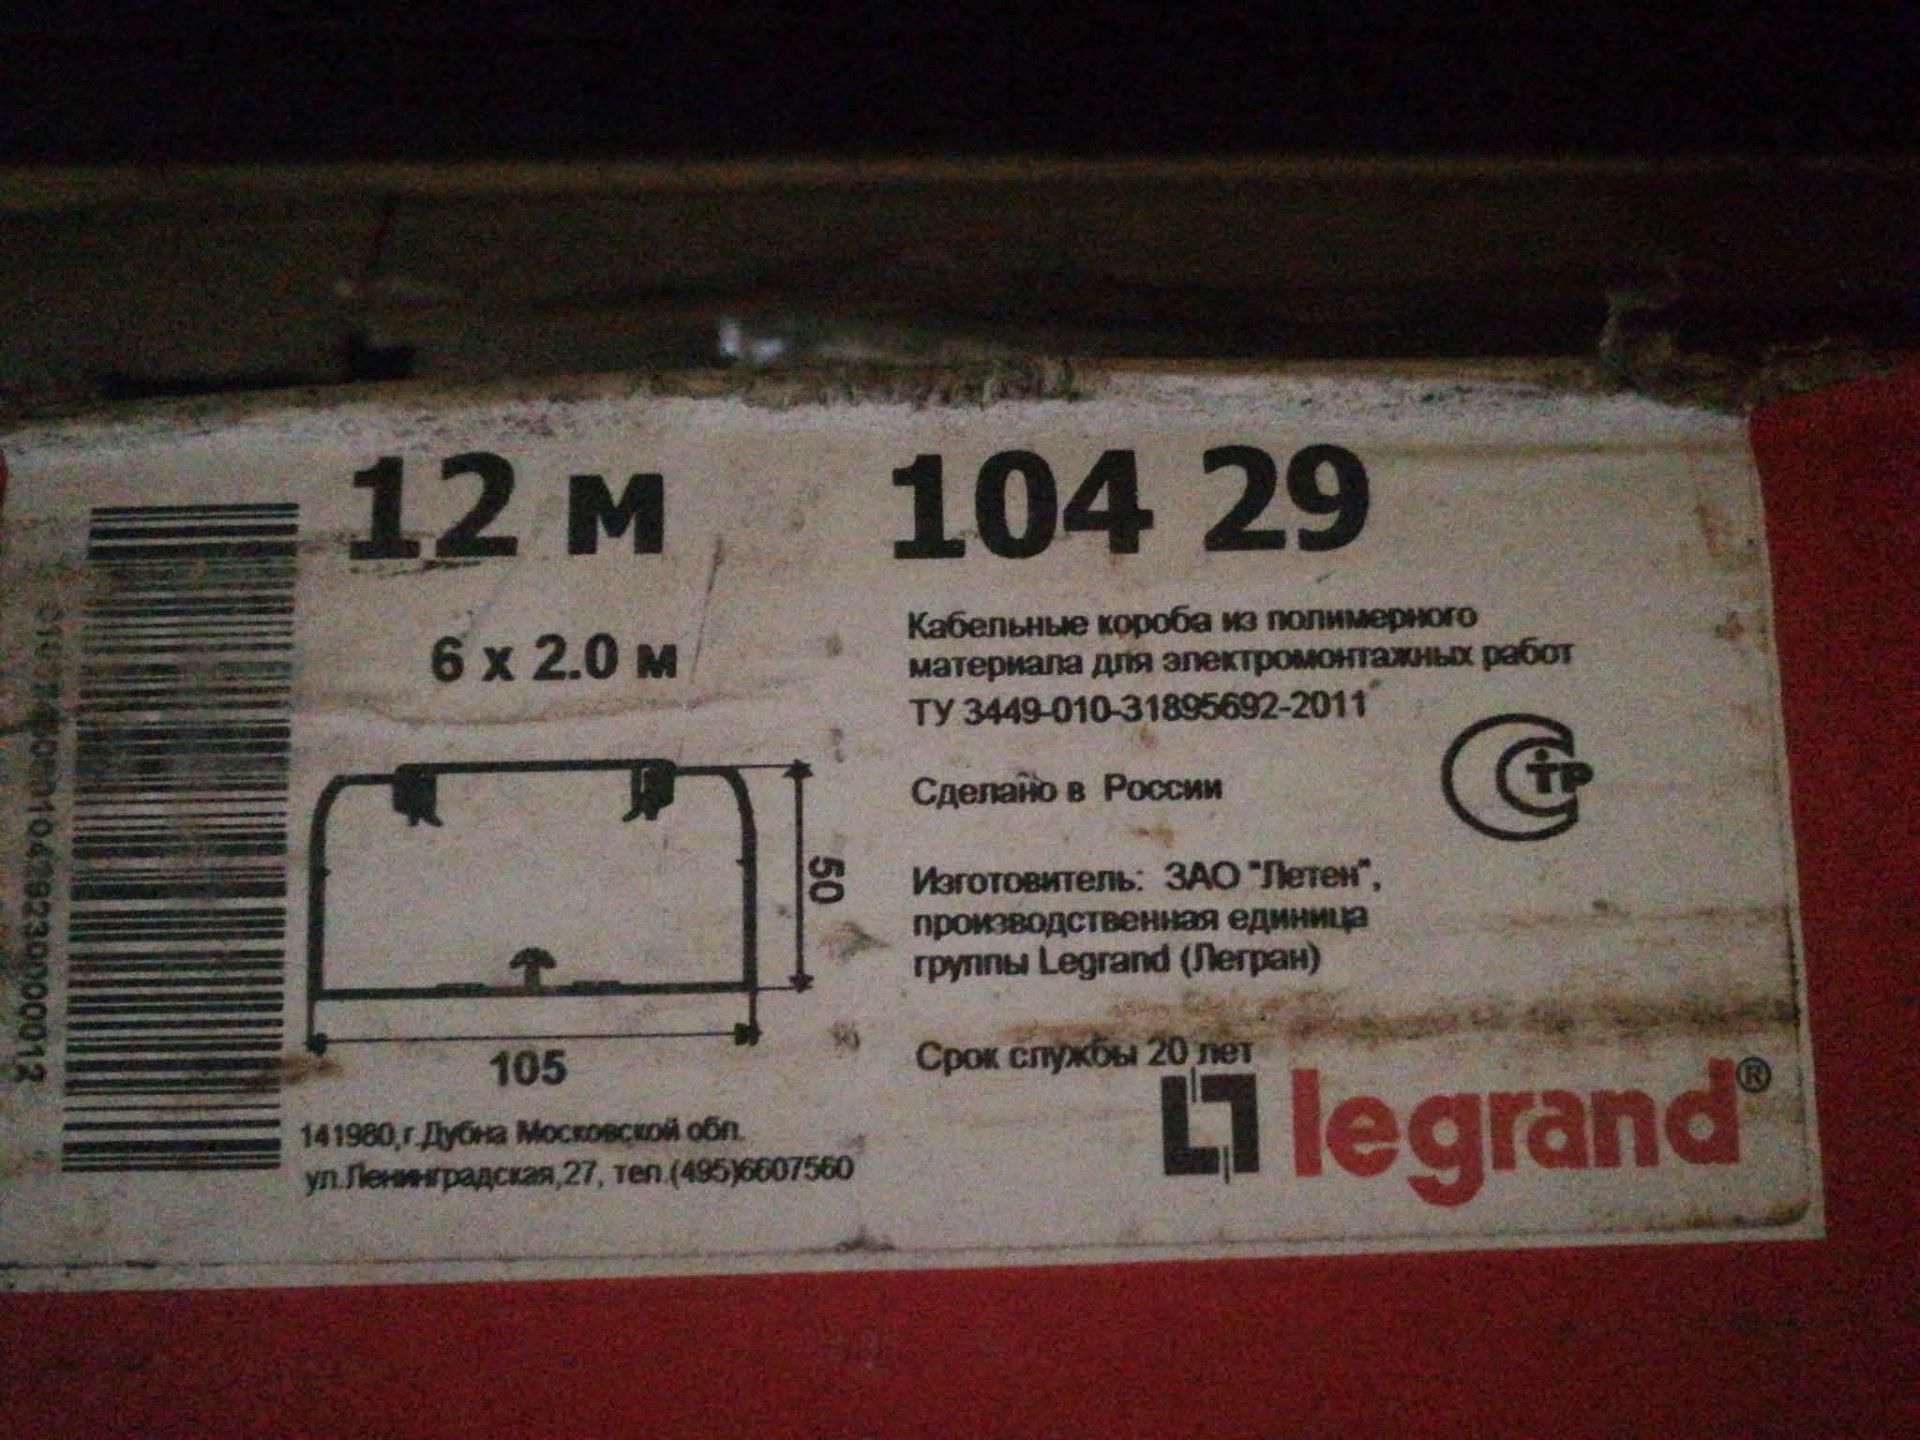 легран 10429 кабель канал